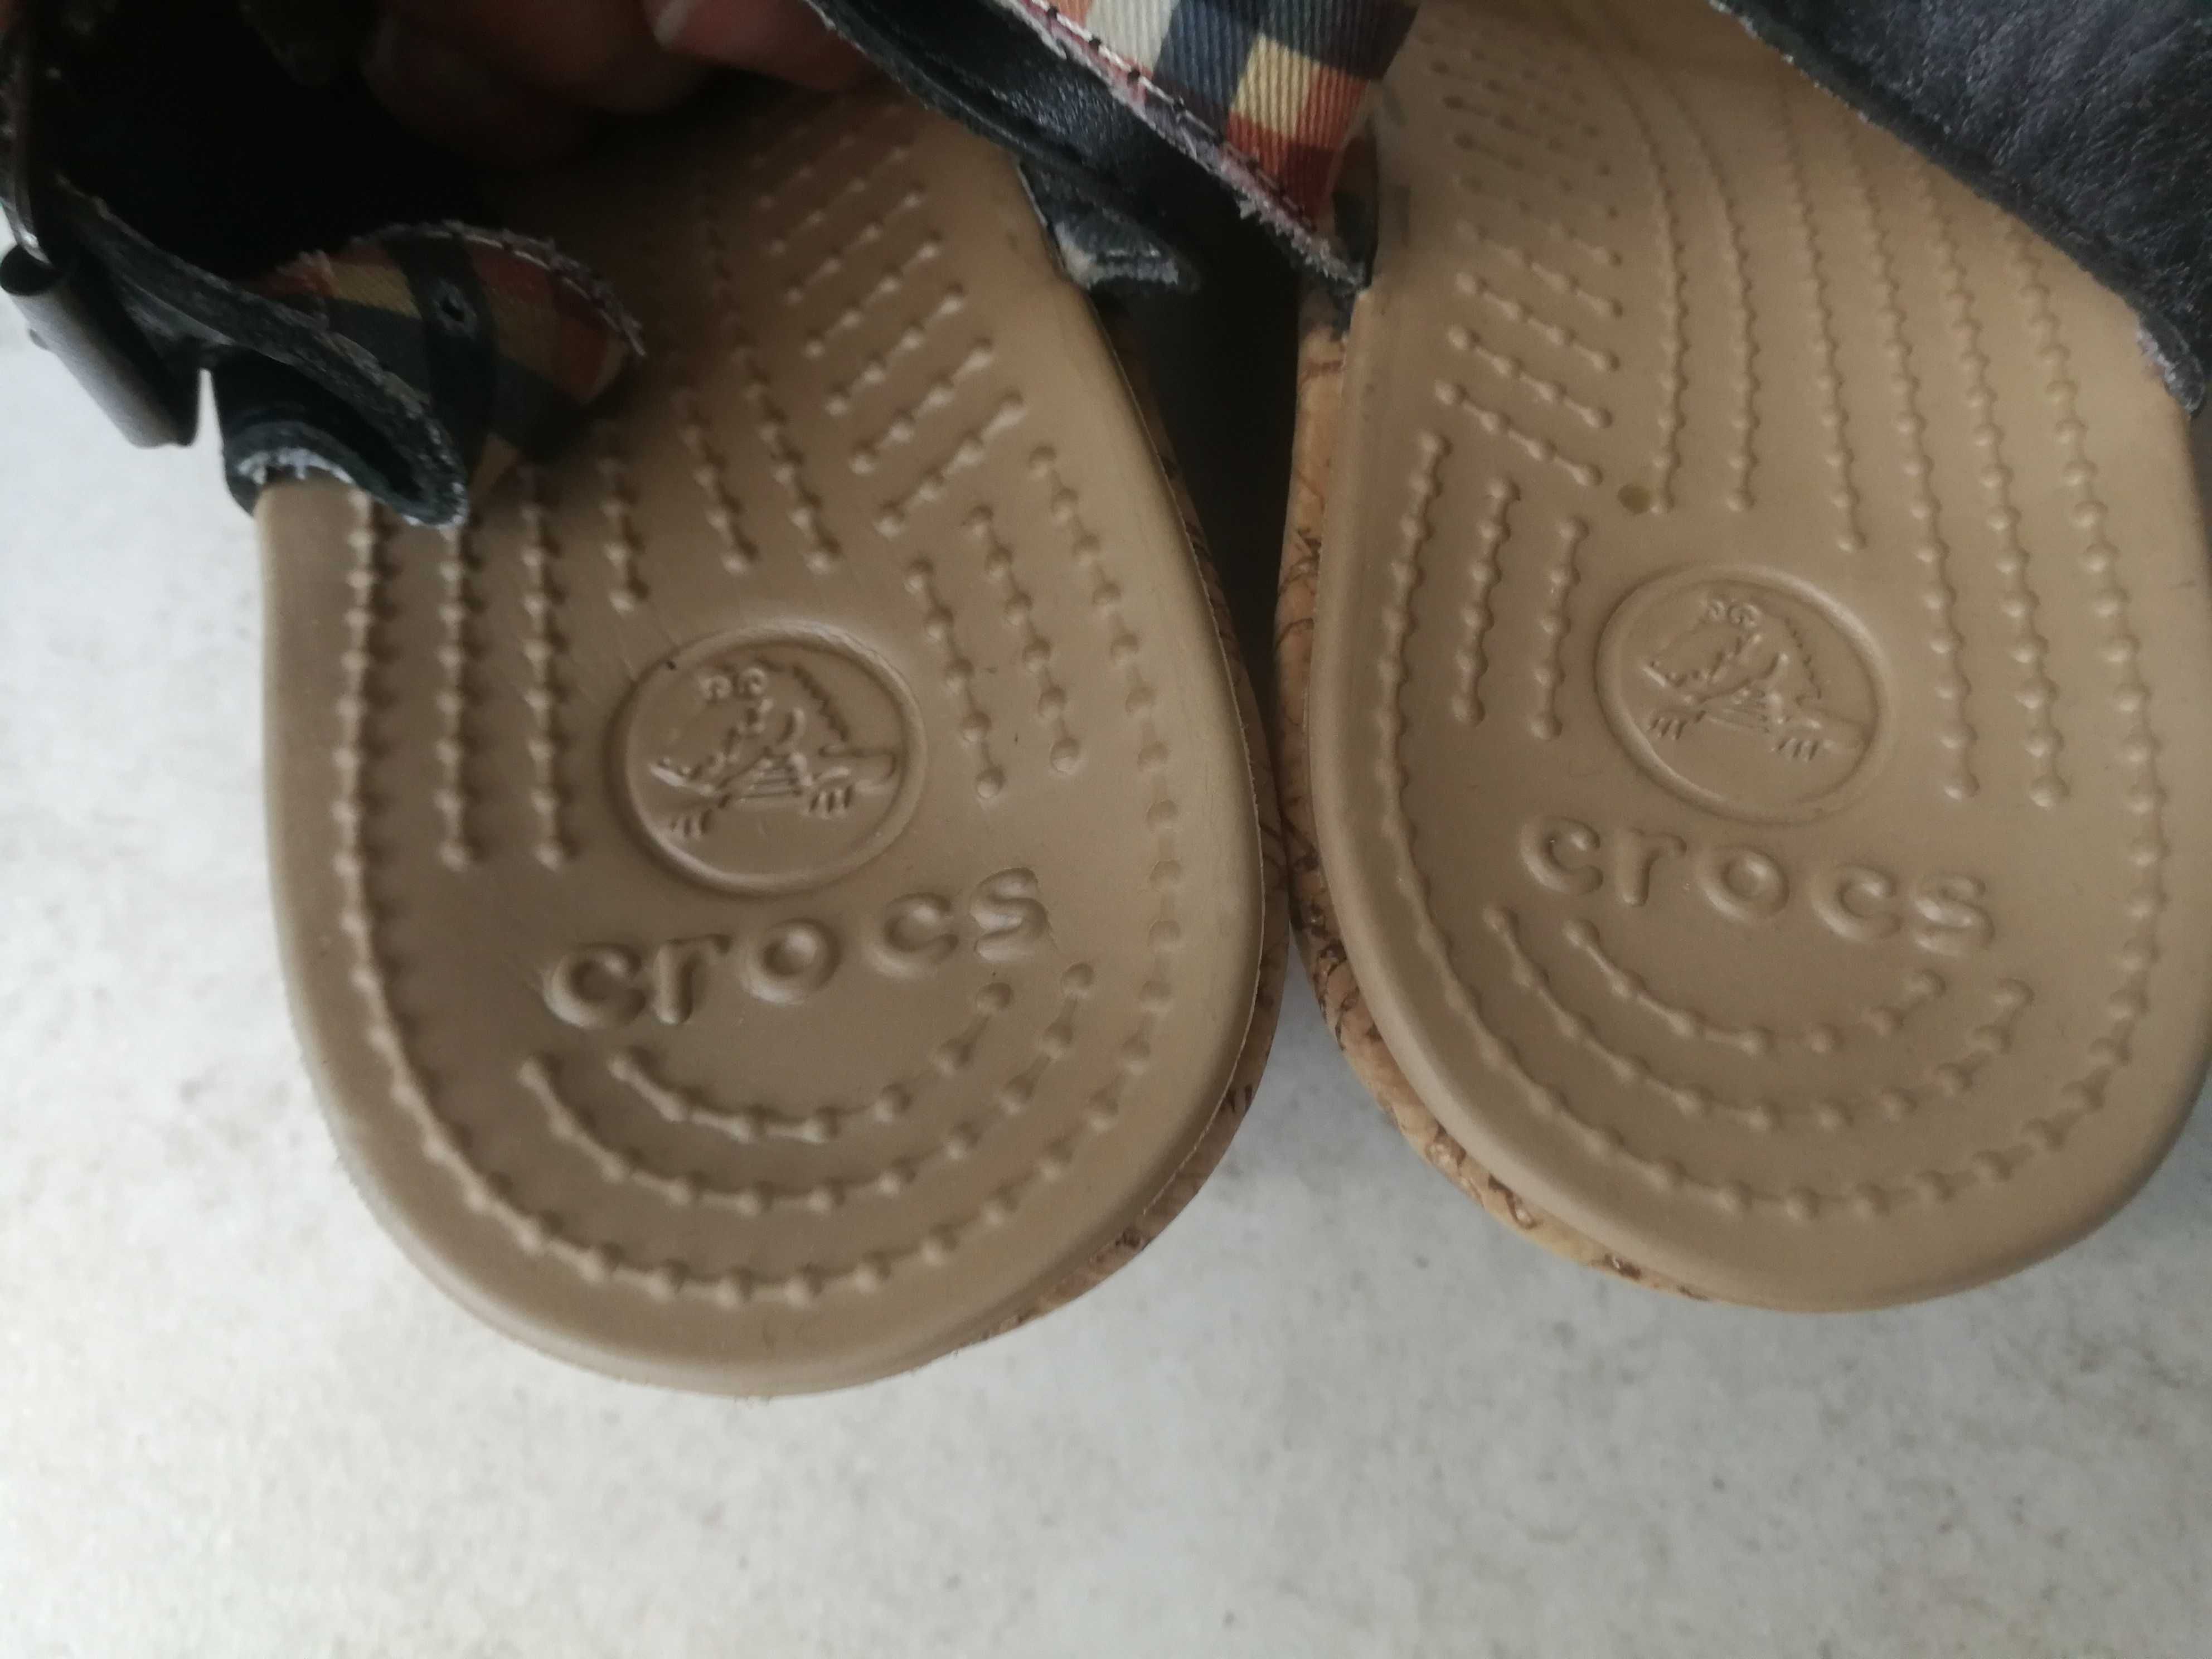 Orygialne buty Crocs sandały na koturnie rozmiar 6 - 39